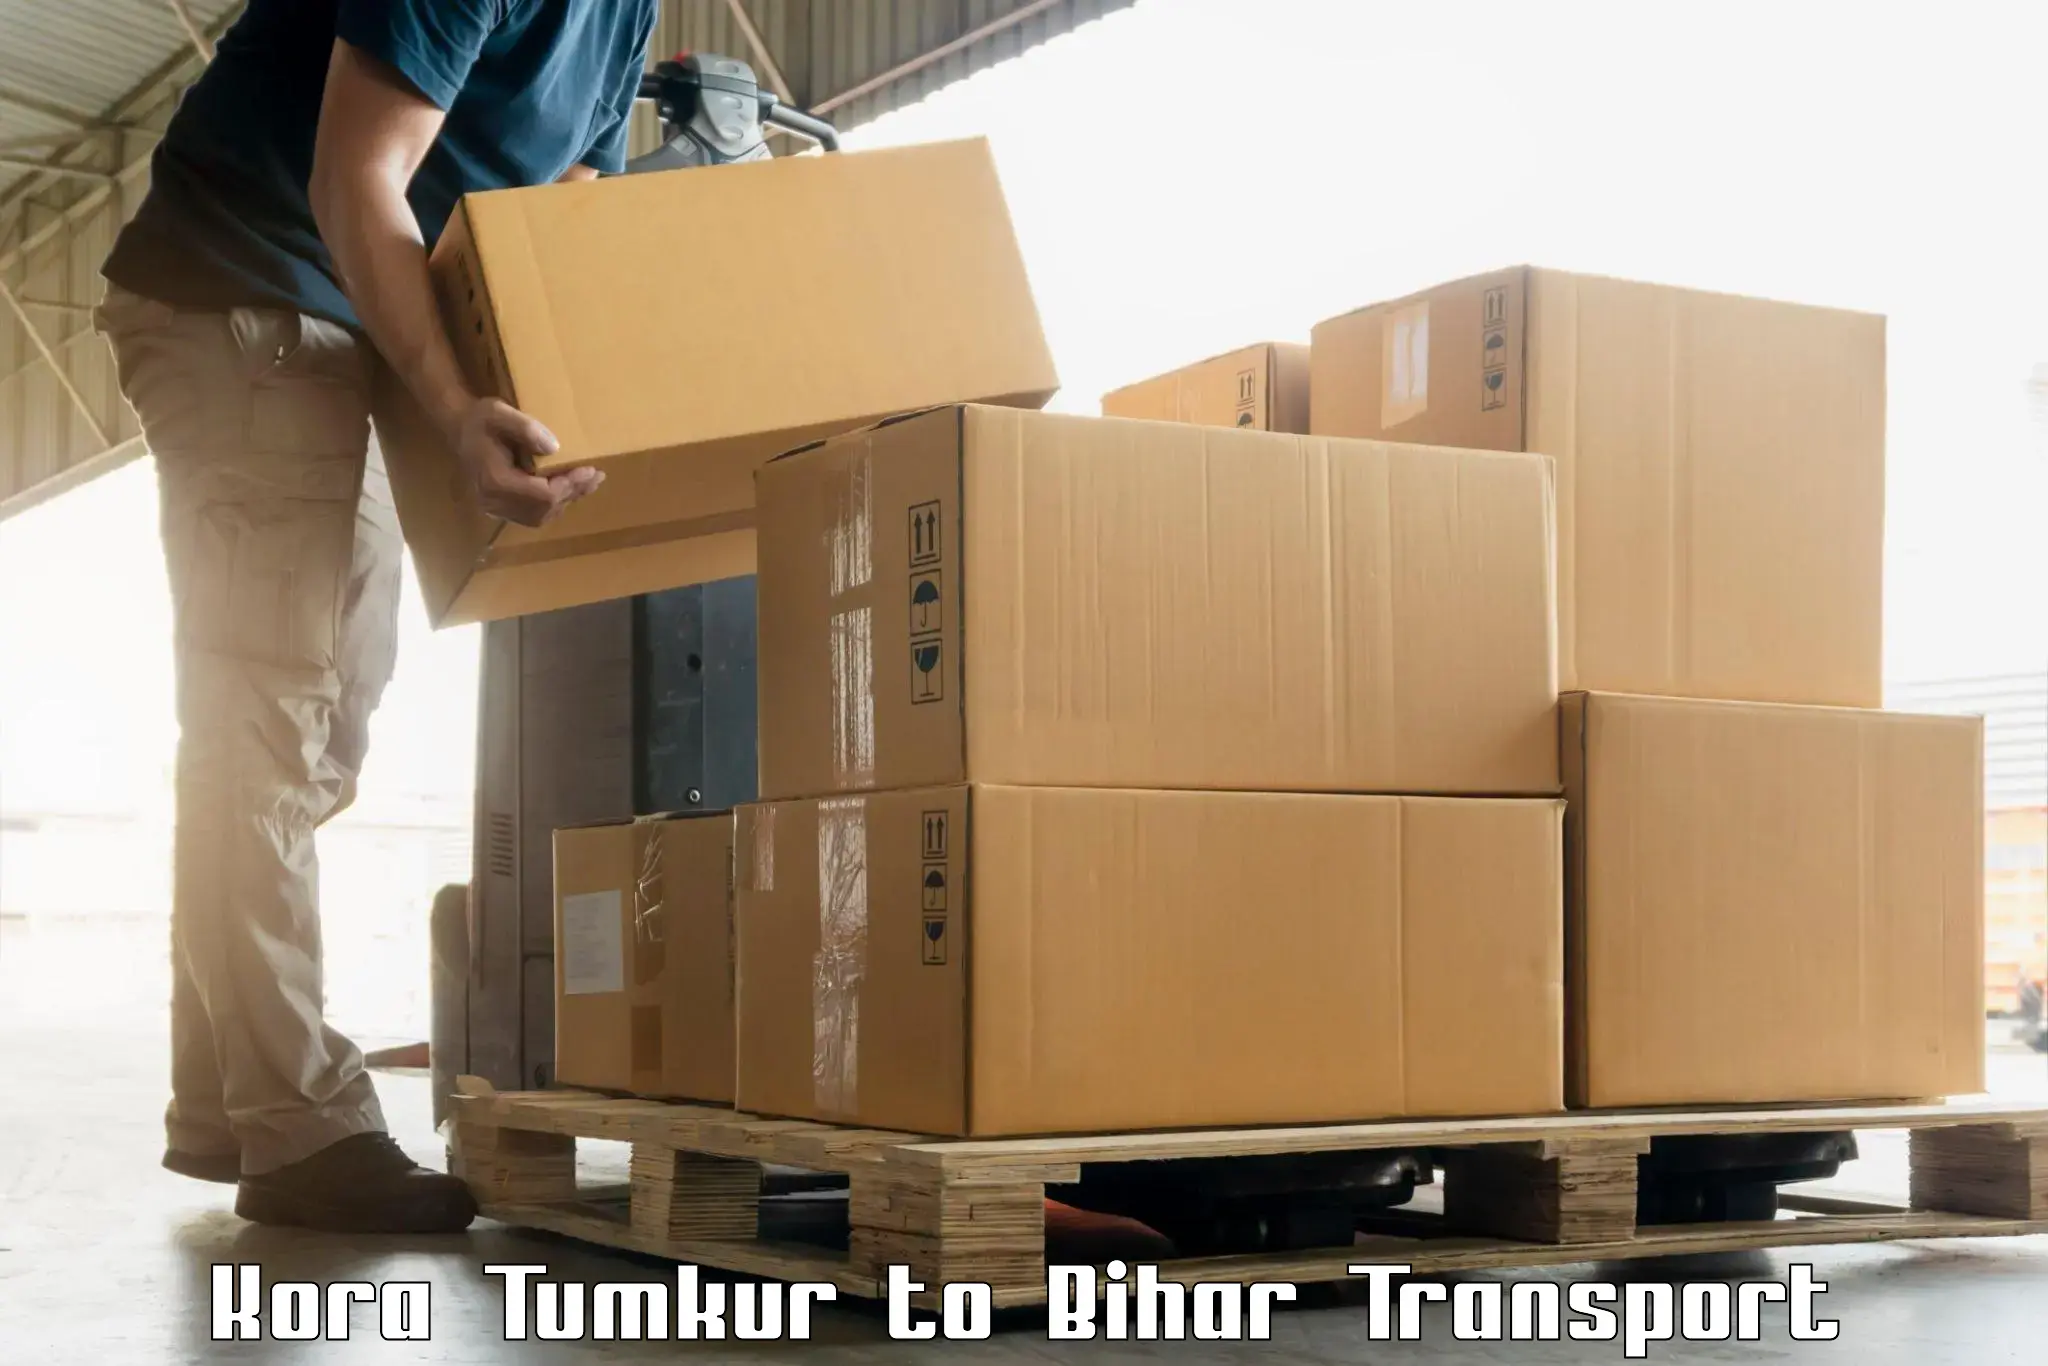 Shipping partner Kora Tumkur to Narpatganj